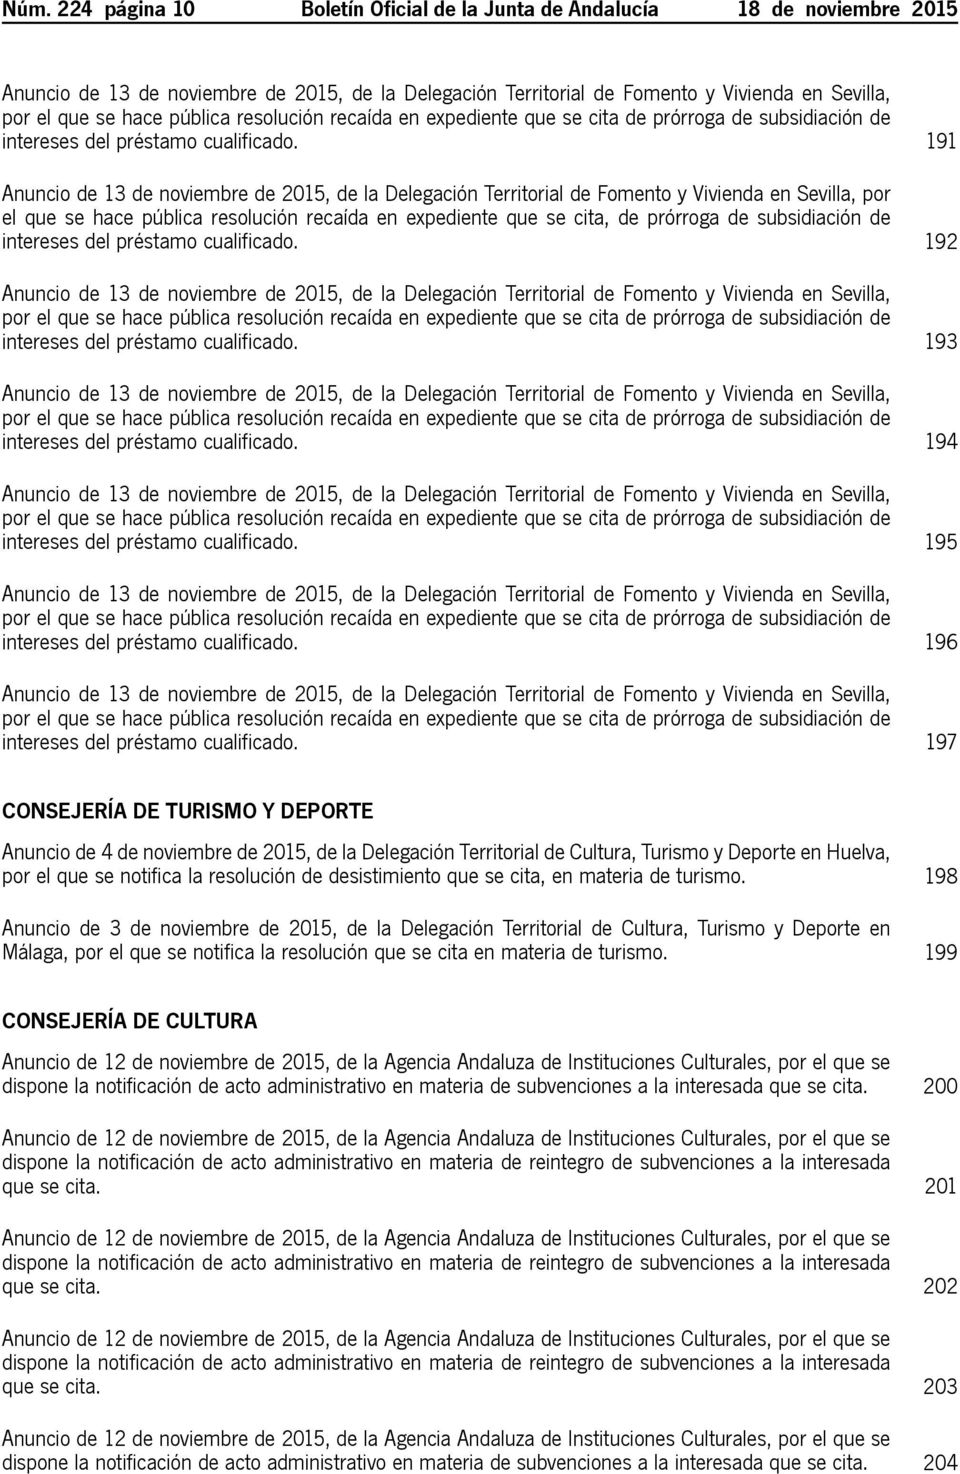 191 Anuncio de 13 de noviembre de 2015, de la Delegación Territorial de Fomento y Vivienda en Sevilla, por el que se hace pública resolución recaída en expediente que se cita, de prórroga de